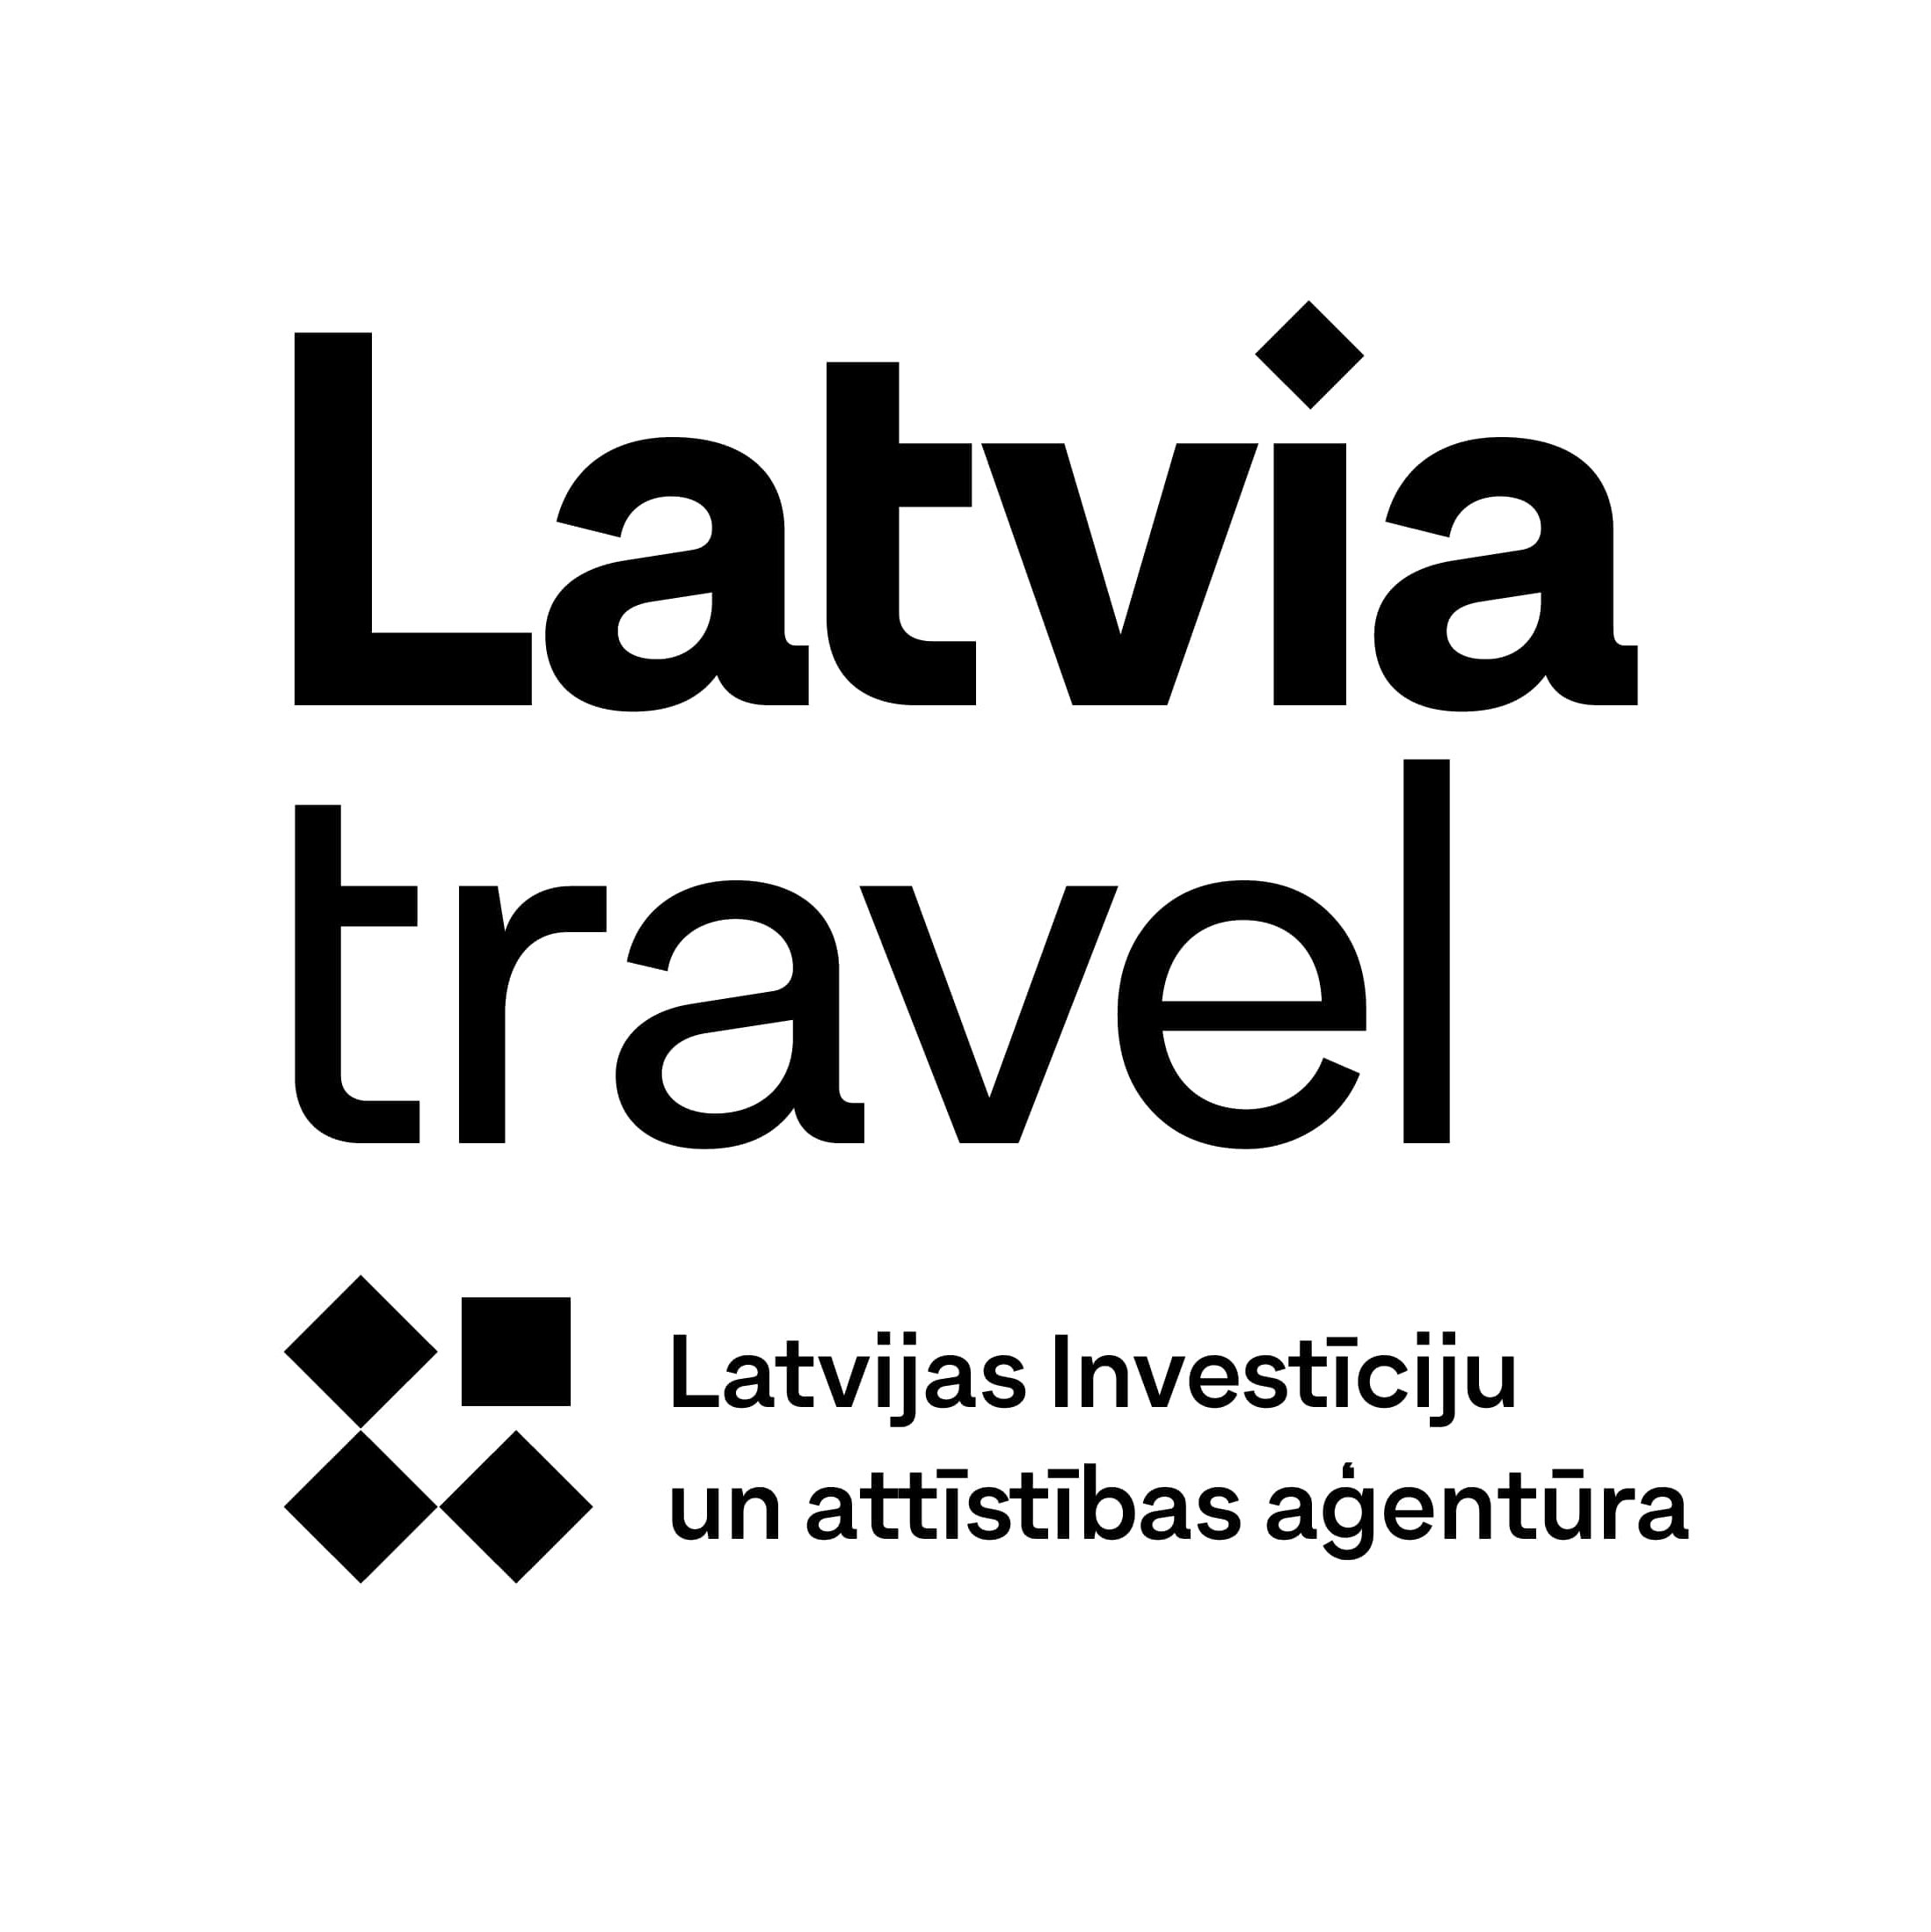 Latvia travel